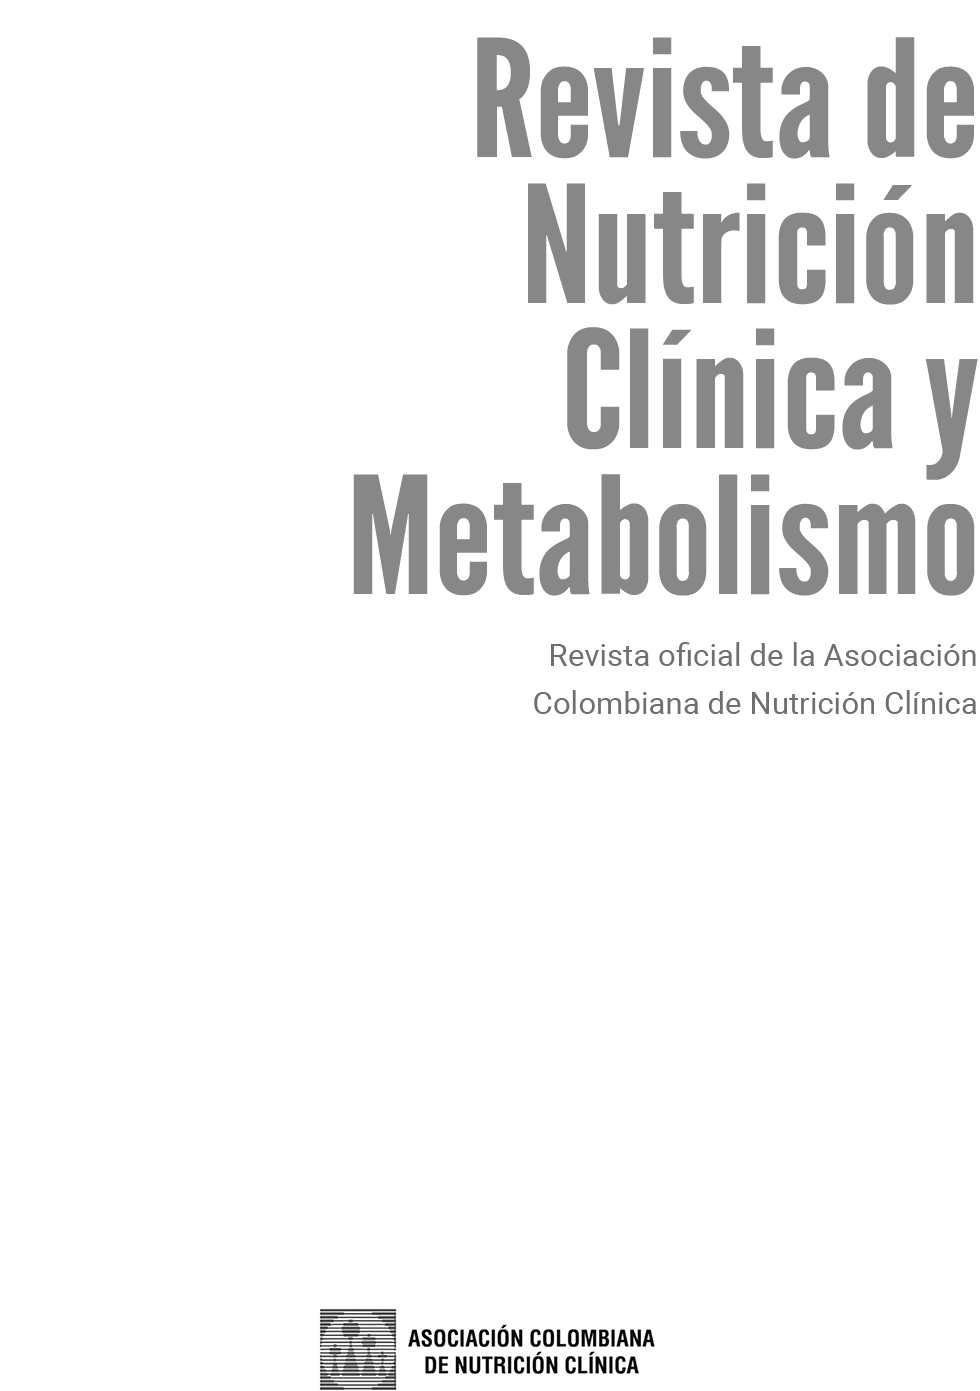 Vista de Revista completa Vol 3 N 2 Revista de Nutrición Clínica y Metabolismo